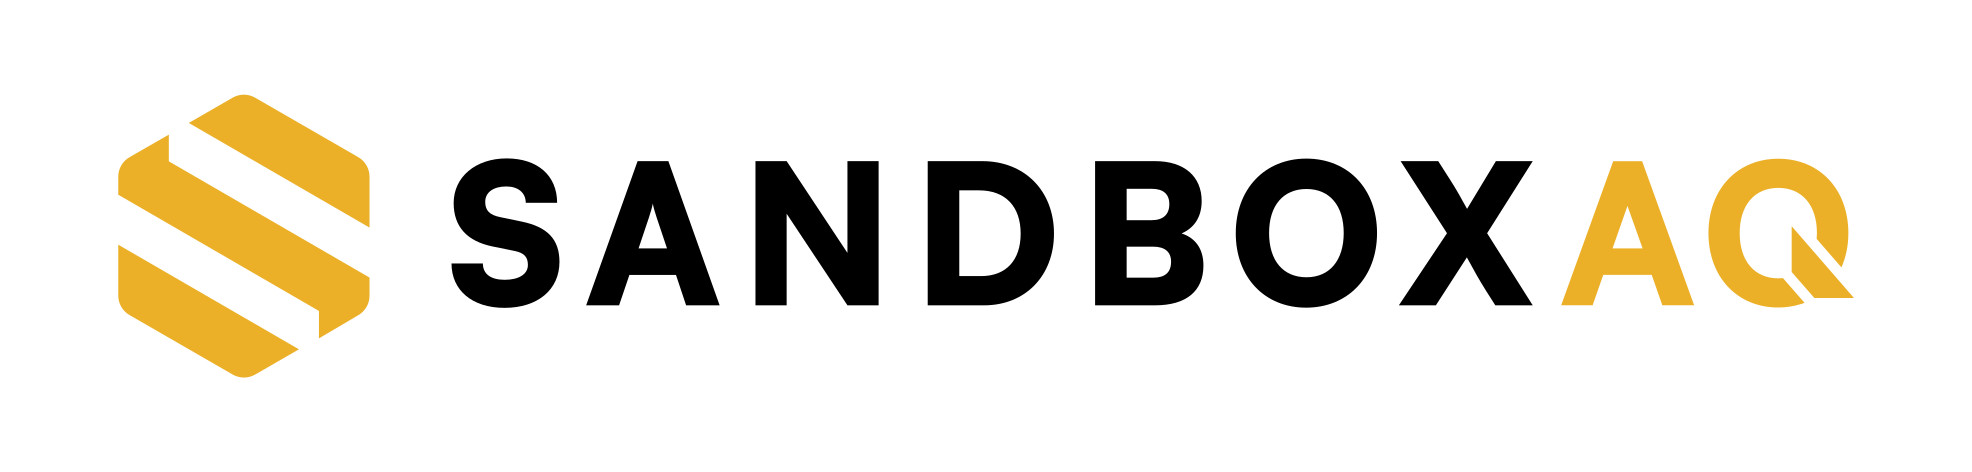 sandbox-aq-logo.jpg